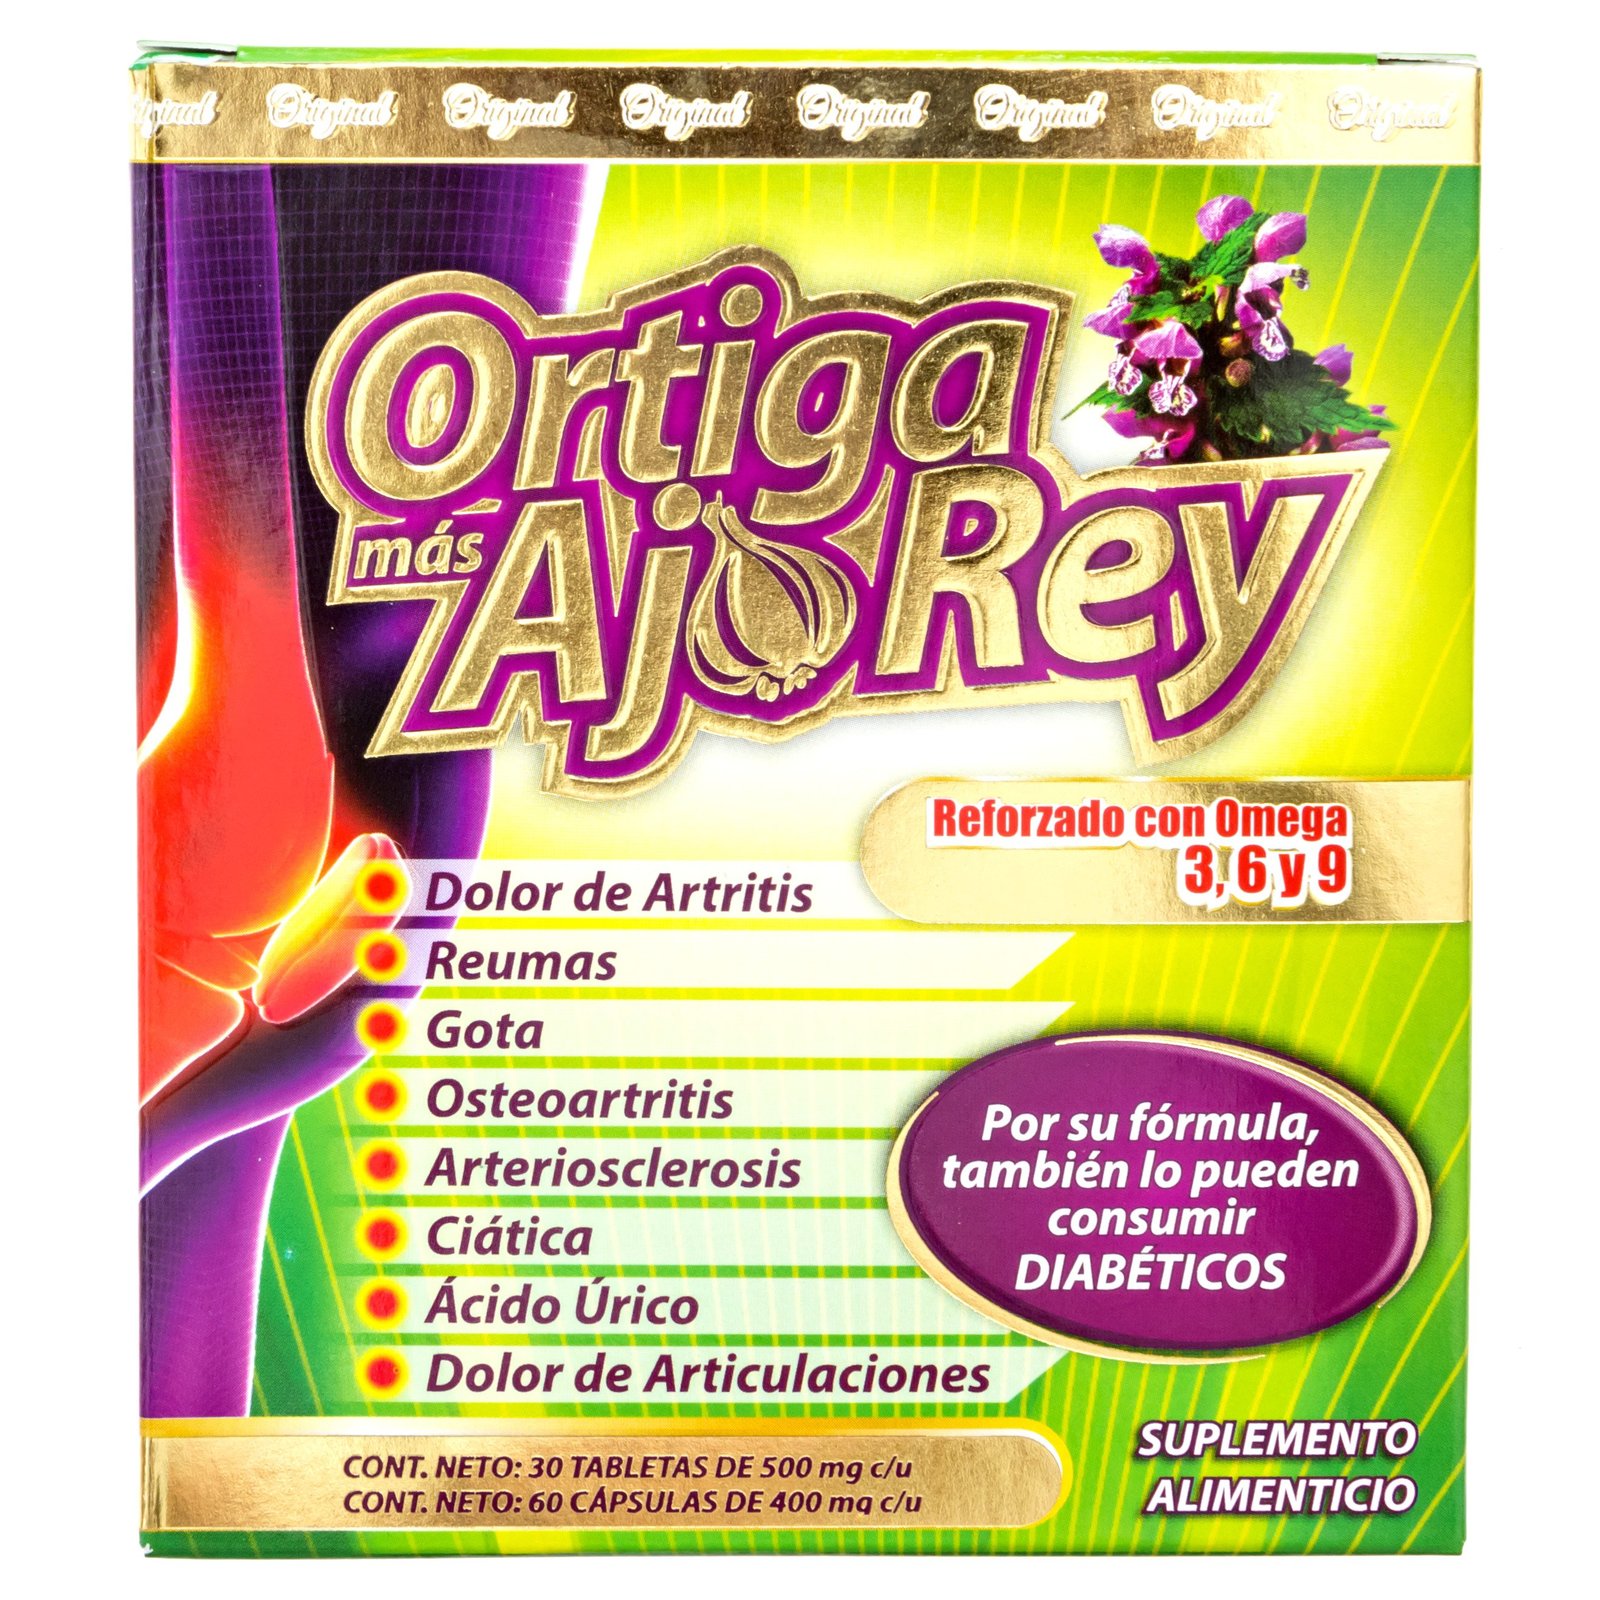 Ortiga Mas Ajo Rey with Omega 3, 6 y 9